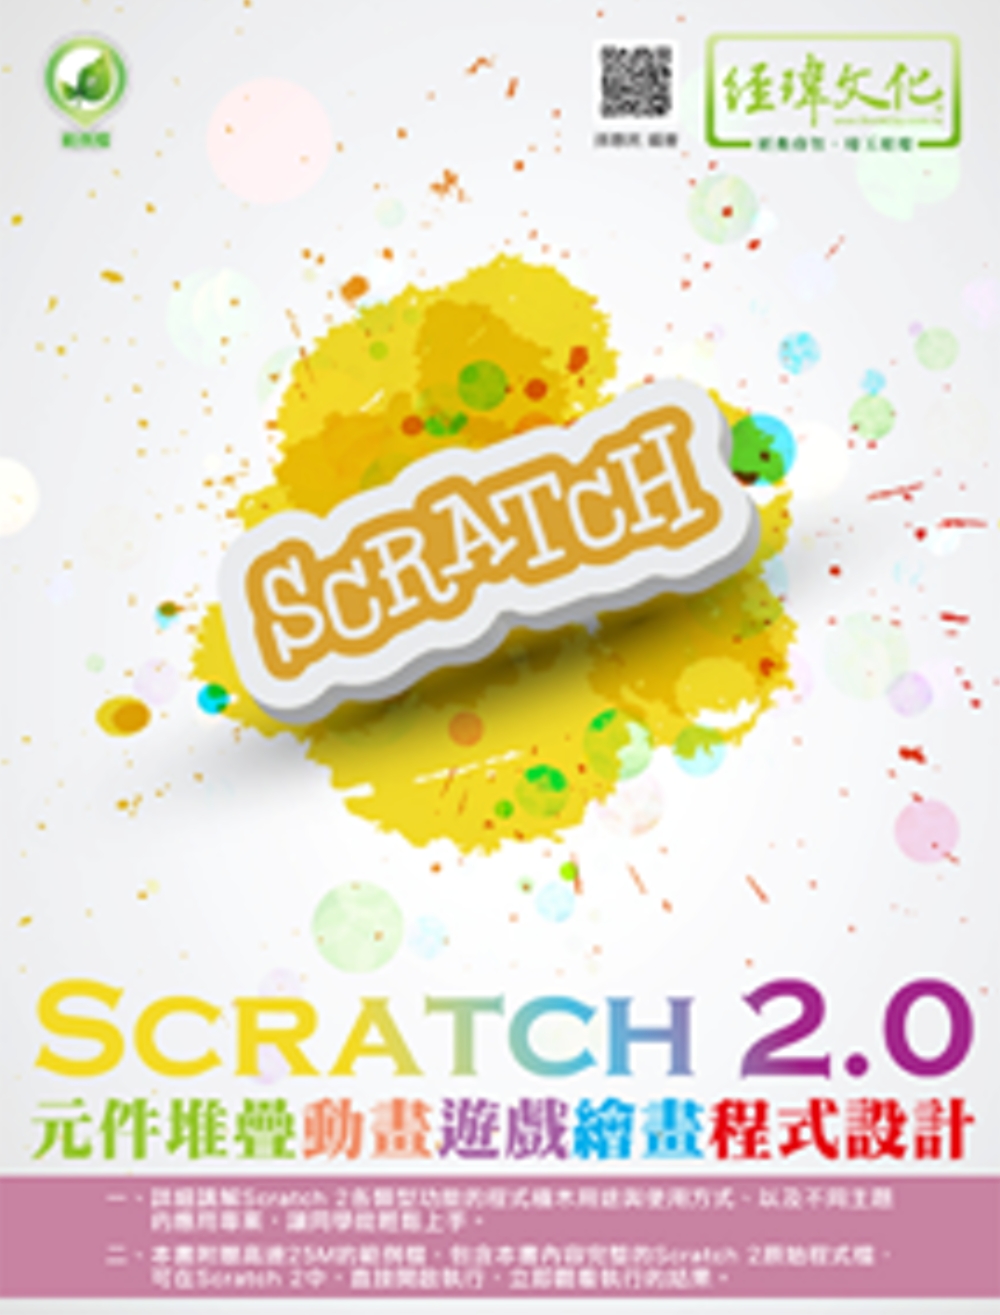 Scratch 2.0元件堆疊動畫遊戲繪畫程式設計(附綠色範例檔)